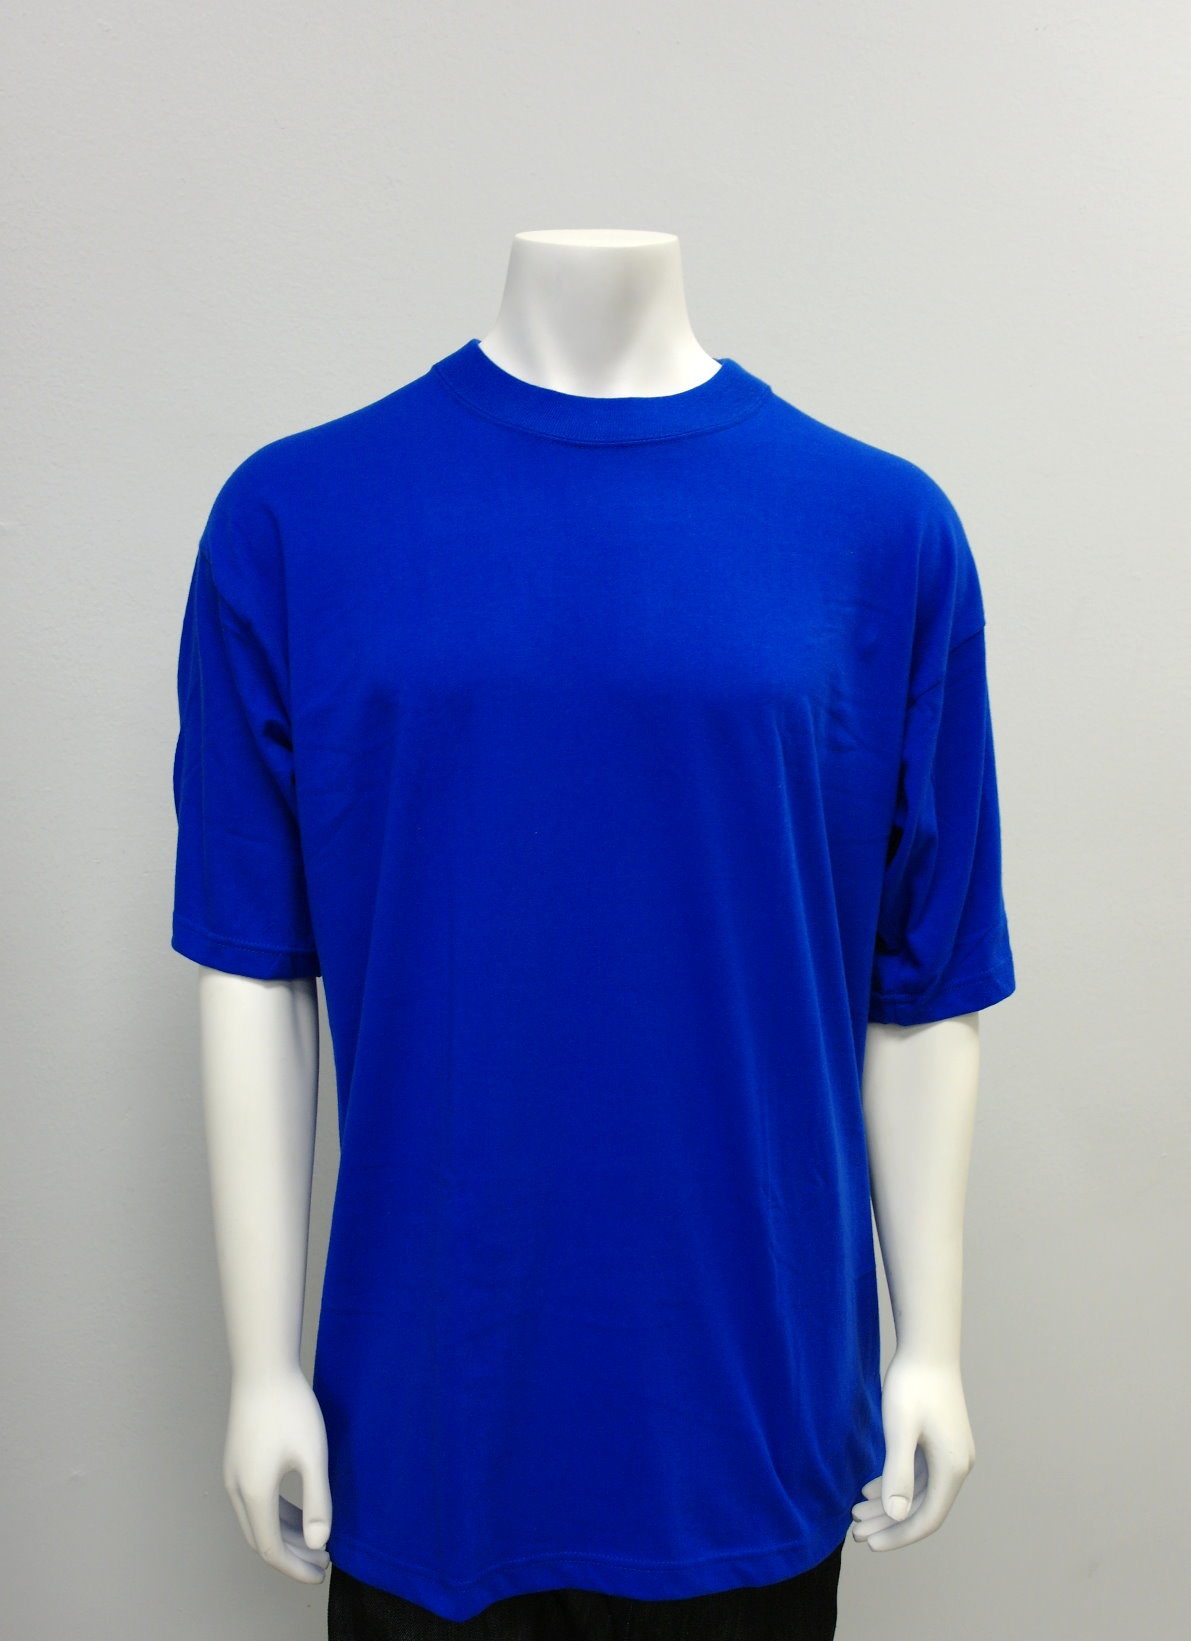 Gemrock Plain Royal Blue Shirt Crew-neck 100% Best Quality Cotton